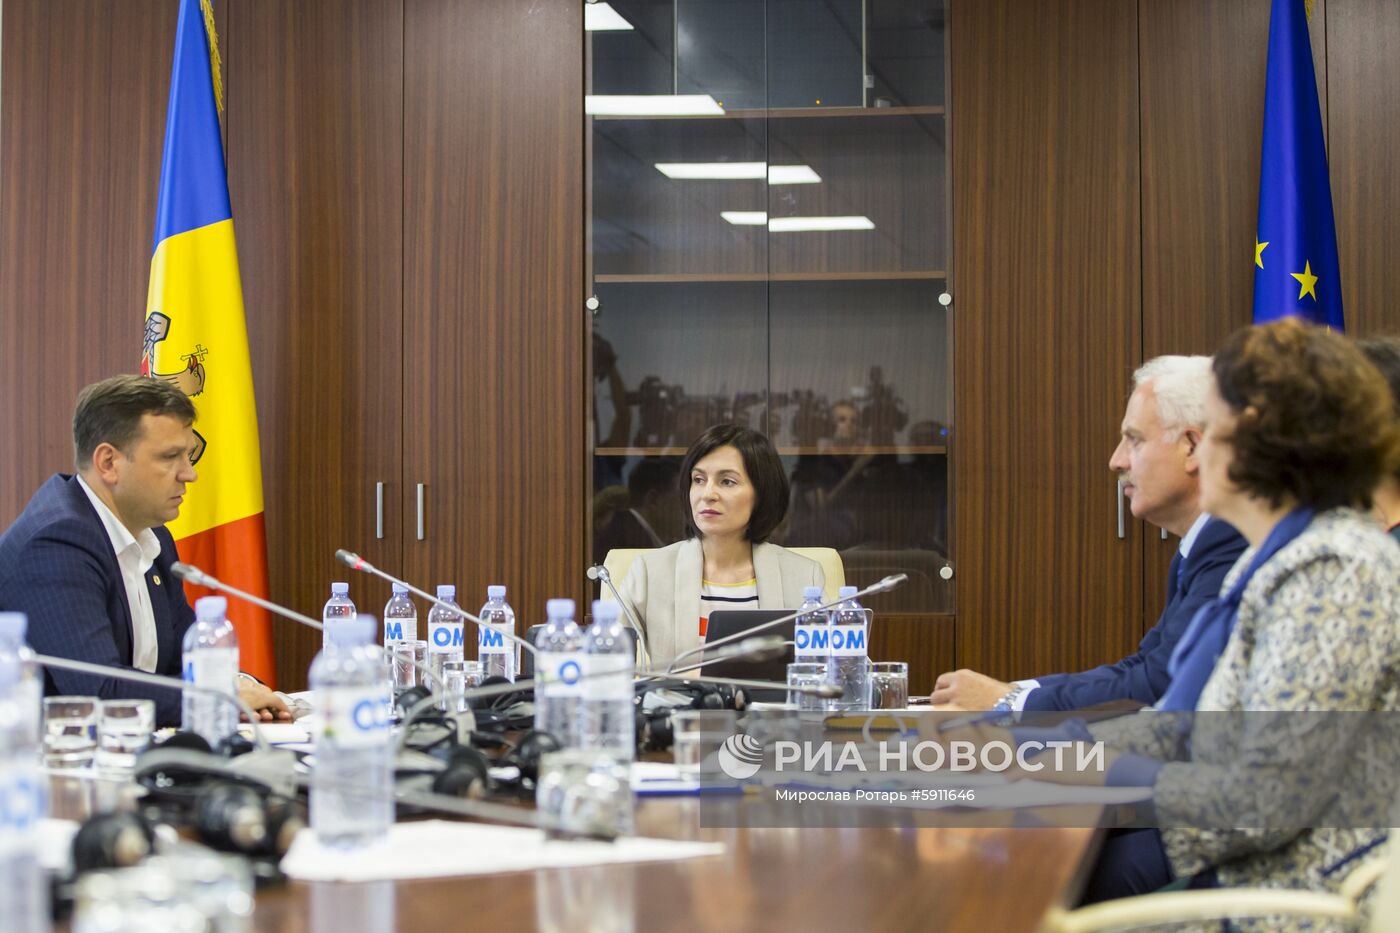 Заседание кабинета министров и парламента в Молдавии